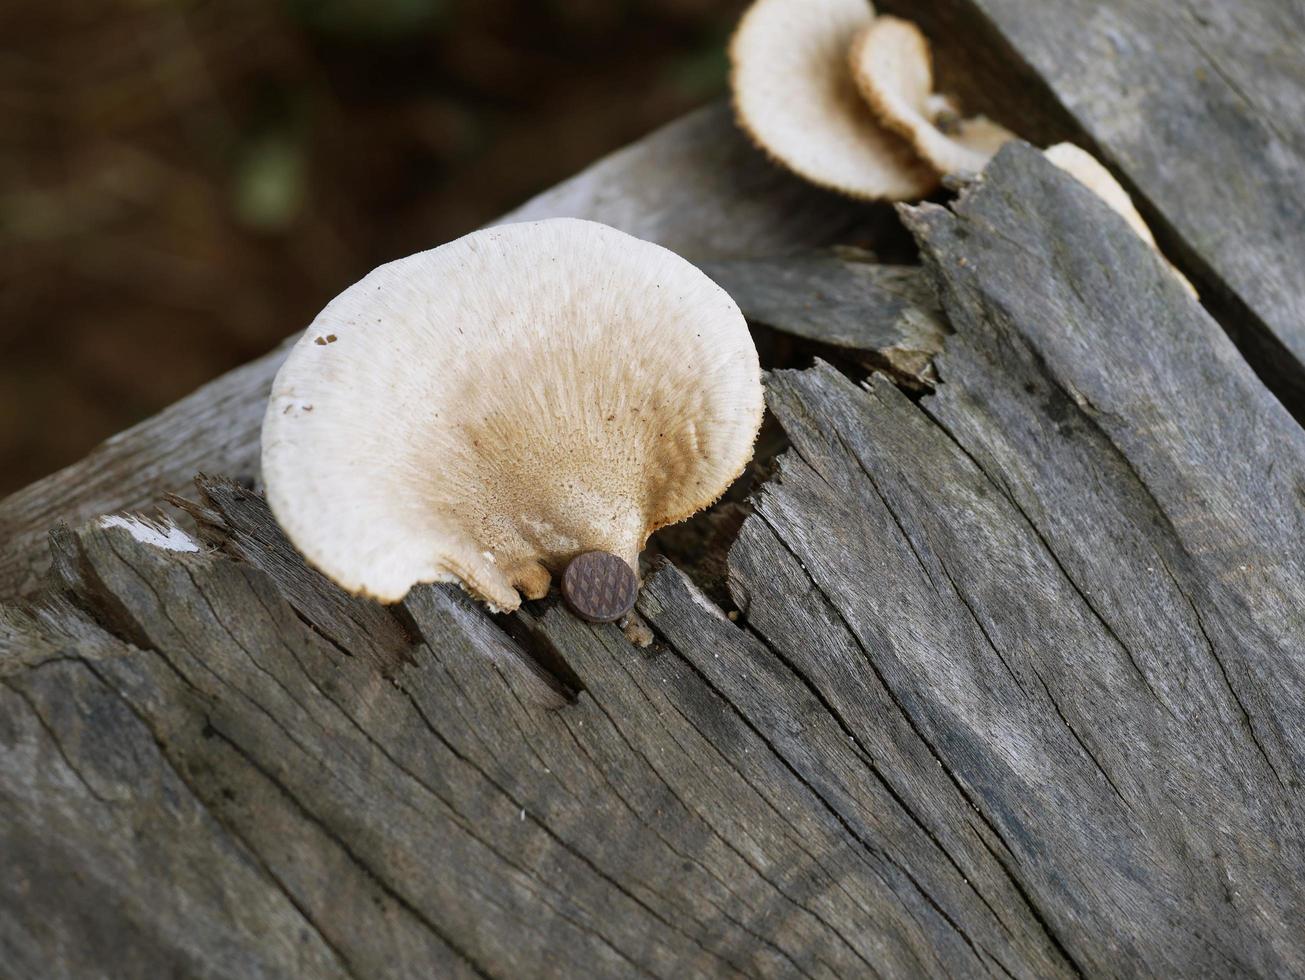 paddenstoelen die op rotte planken groeien met spijkers eraan genageld. foto